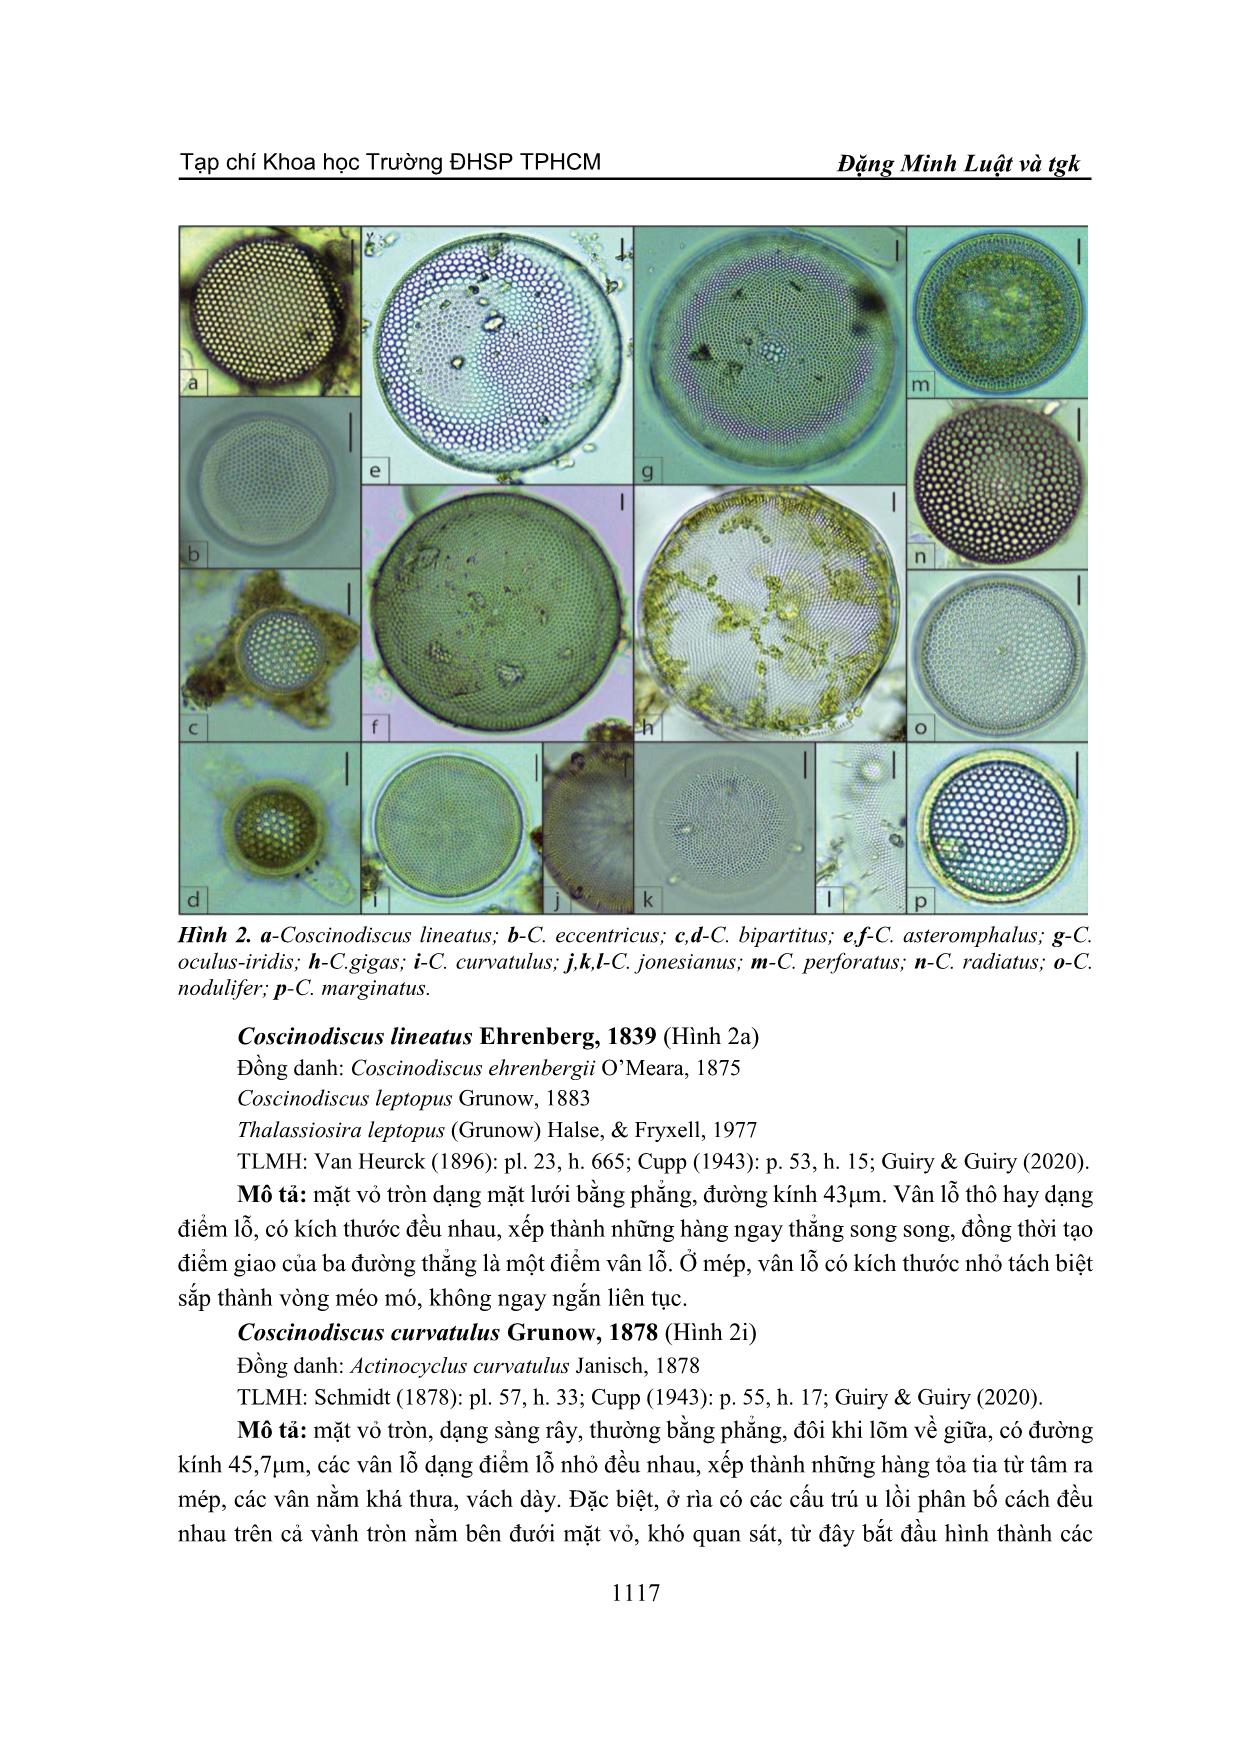 Nhận diện khuê tảo trung tâm coscinodiscus tại ven biển cửa sông Đông Hải, huyện Duyên Hải, tỉnh Trà Vinh trang 5